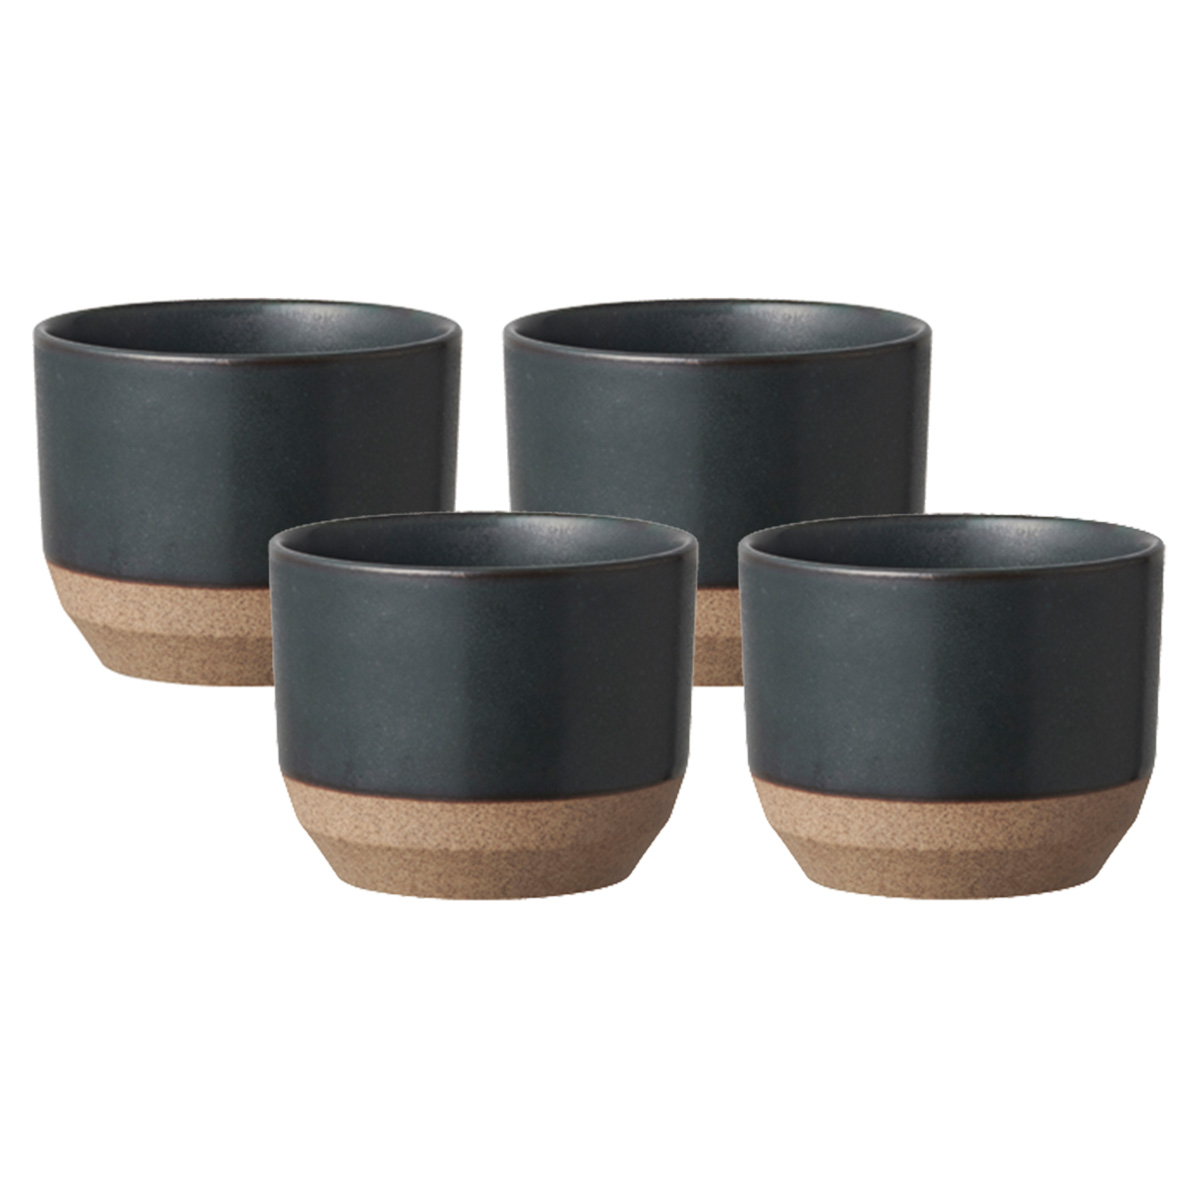 Little Mug Keramik schwarz 4 Stück